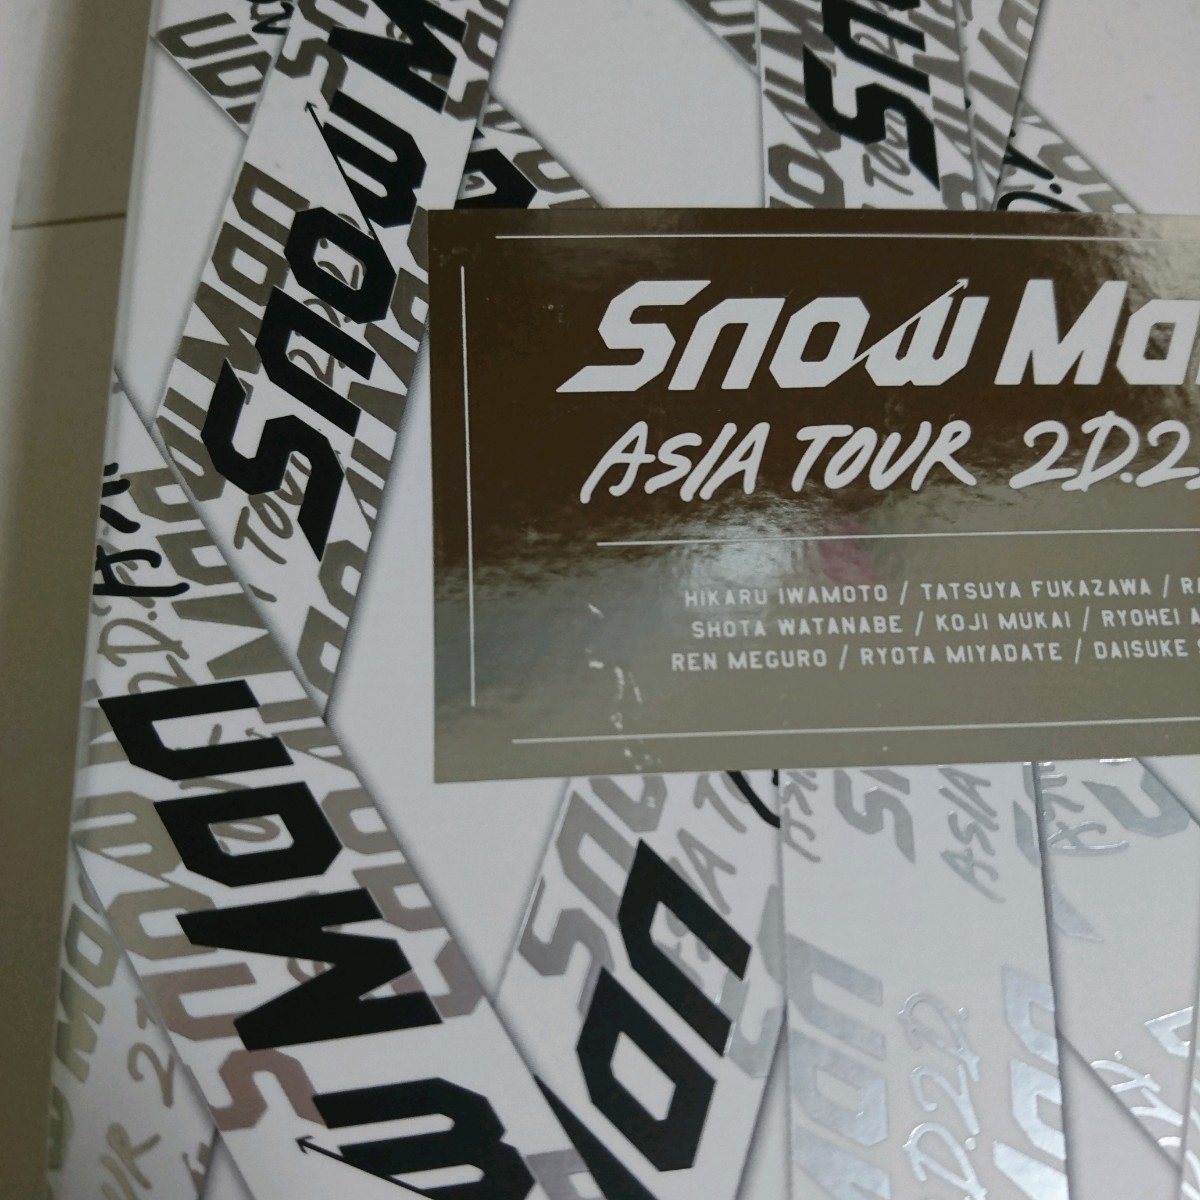 スーパーセール期間限定 Snow Man ASIA TOUR 2D.2D. egypticf